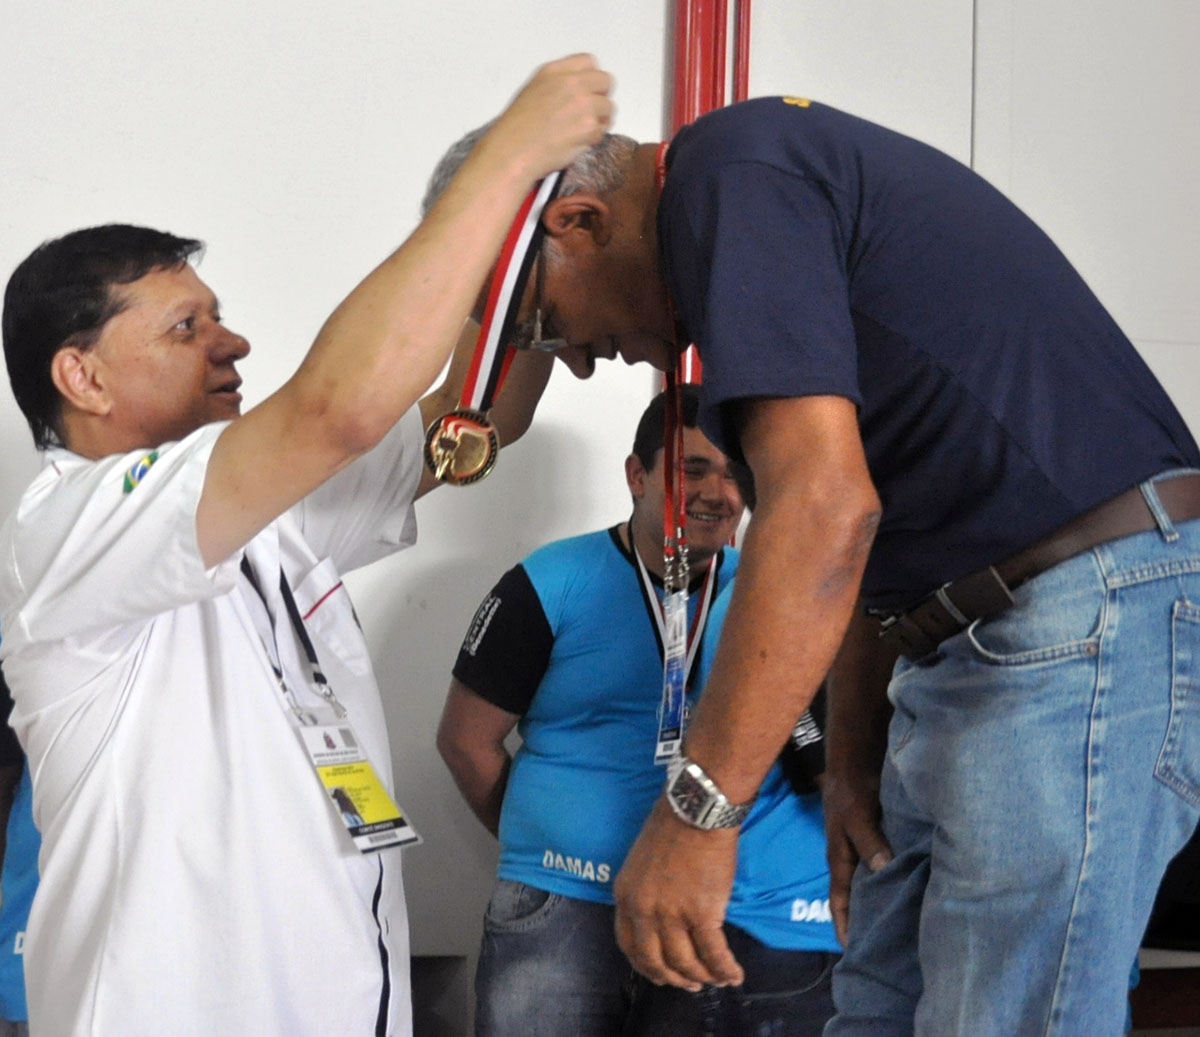 São José dos Campos é o campeão dos Jogos Abertos 2014 - Círculo On